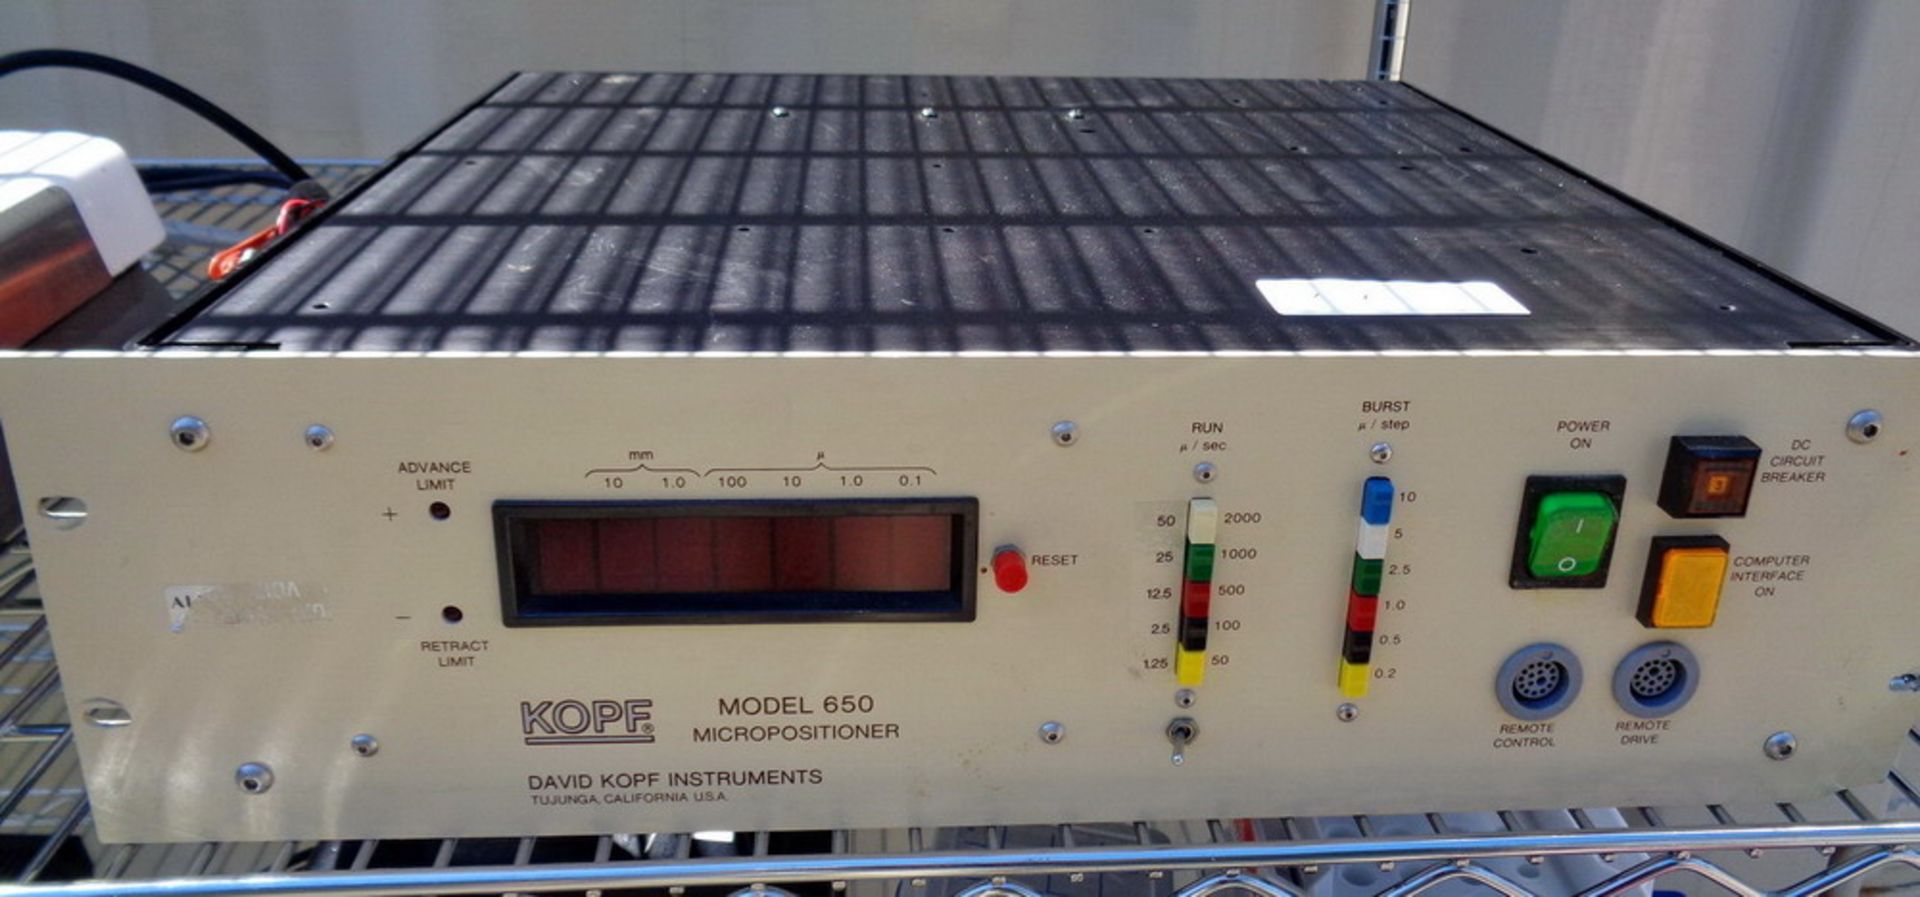 Kopf Model 650 Micropositioner, S/N 65004